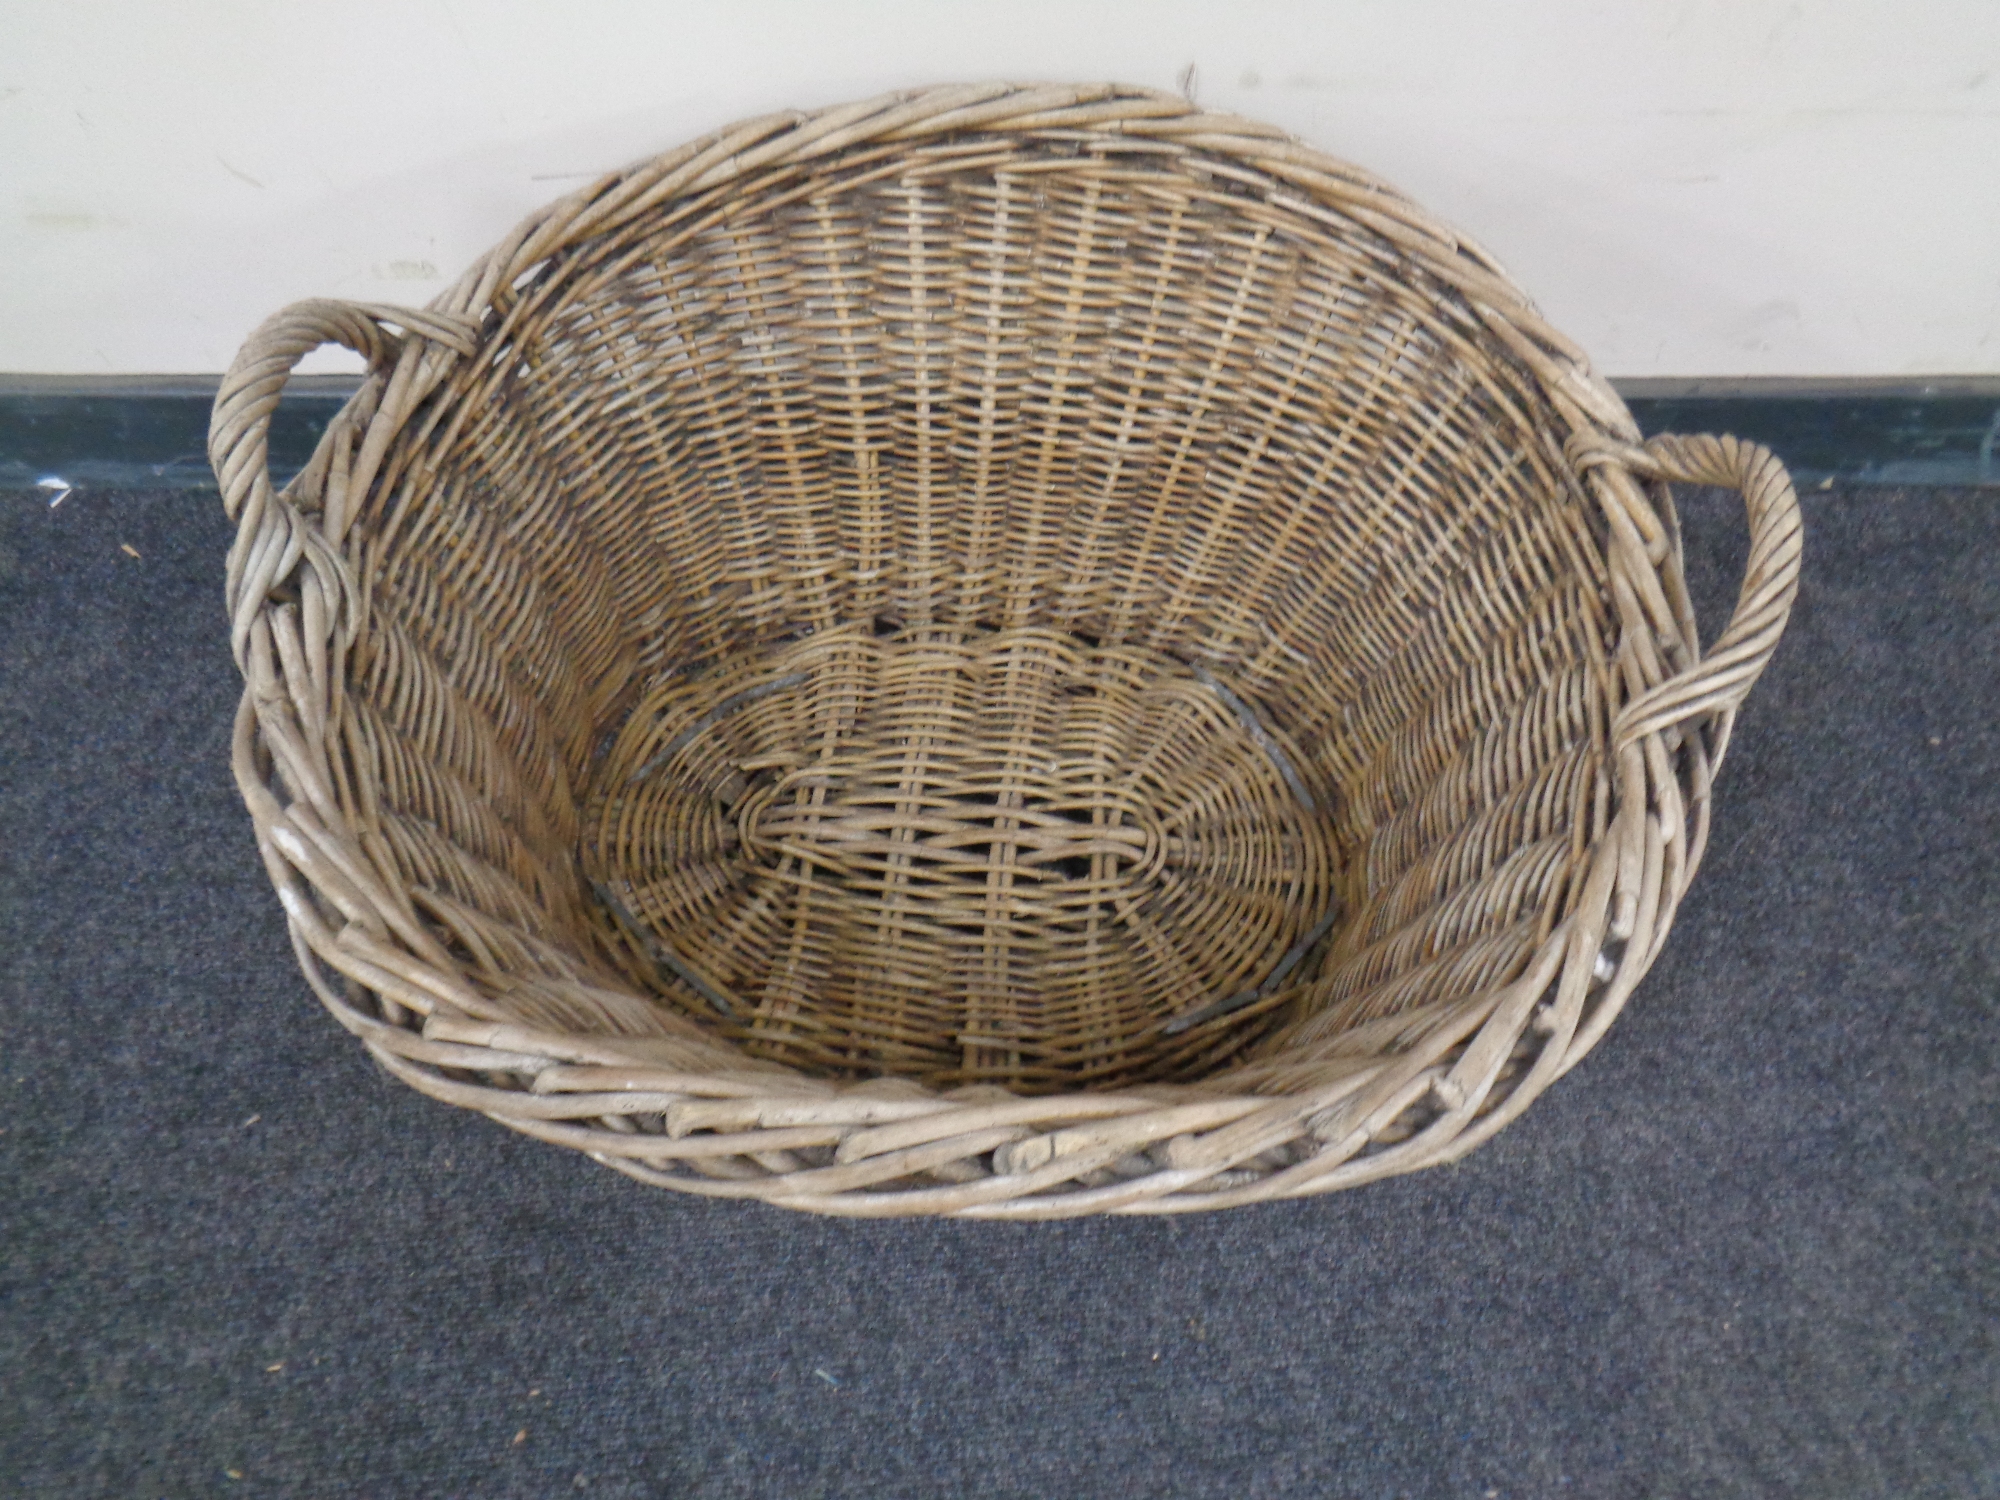 A wicker twin handled log basket.